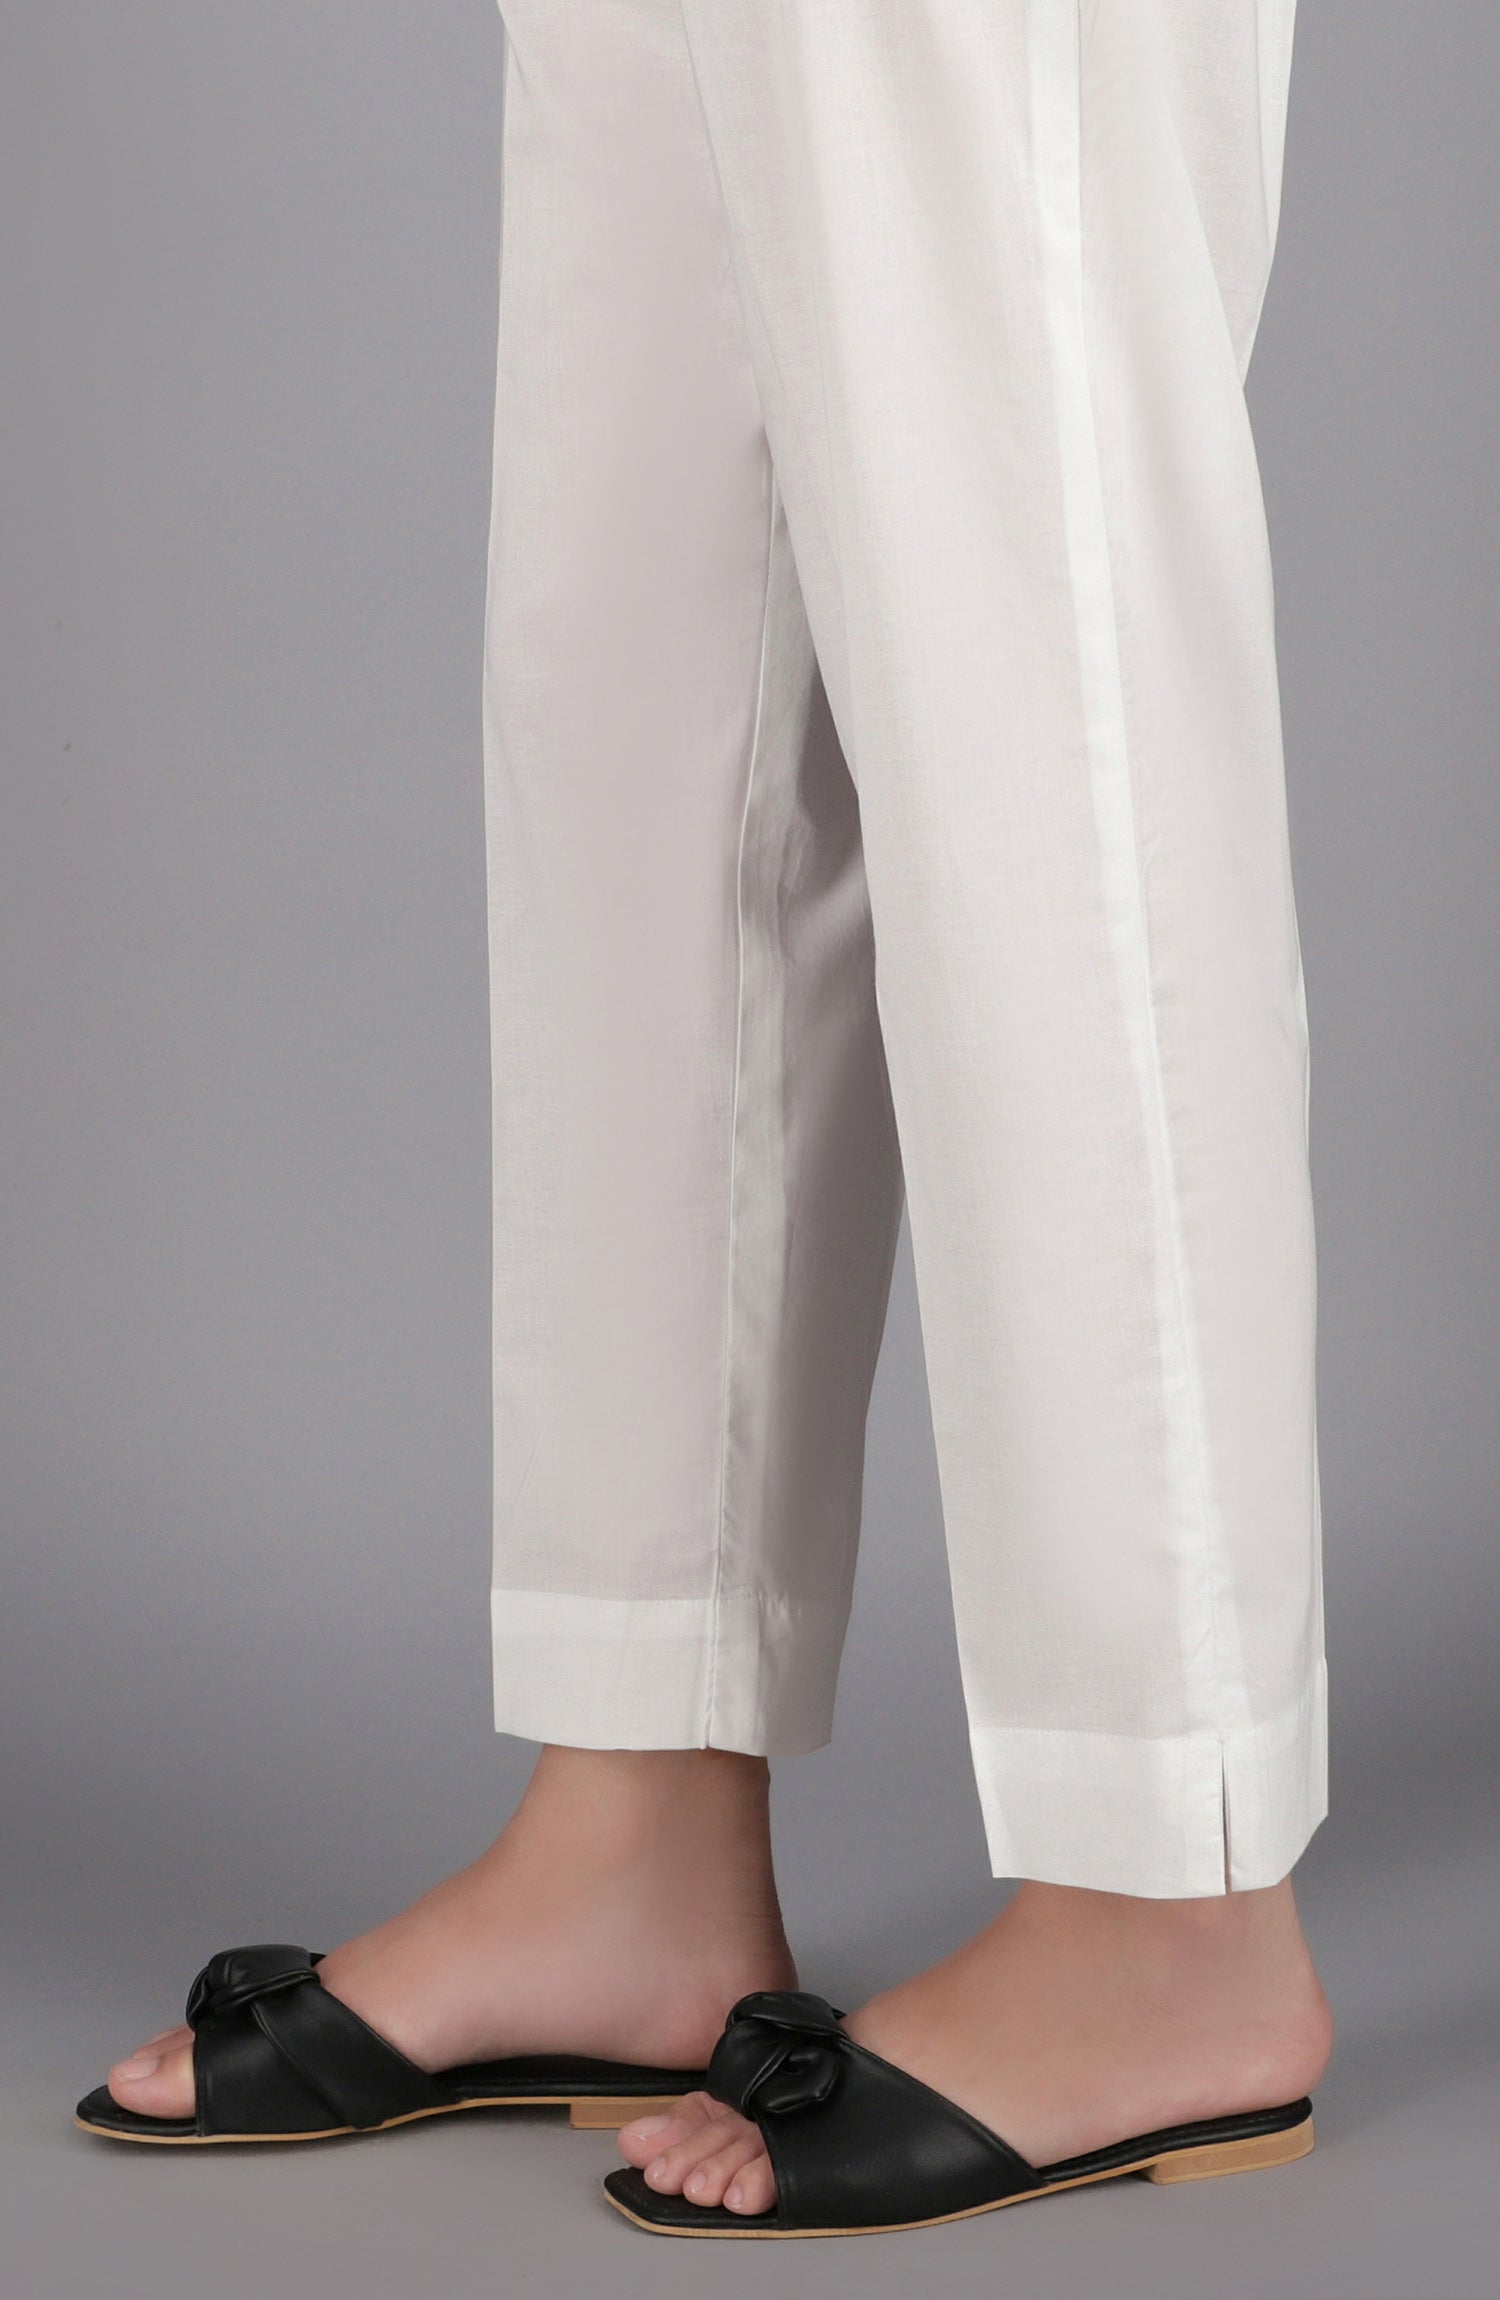 Orient Stitched Bottoms 1 Piece Plain Cambric Pants - Nrp-104/S White